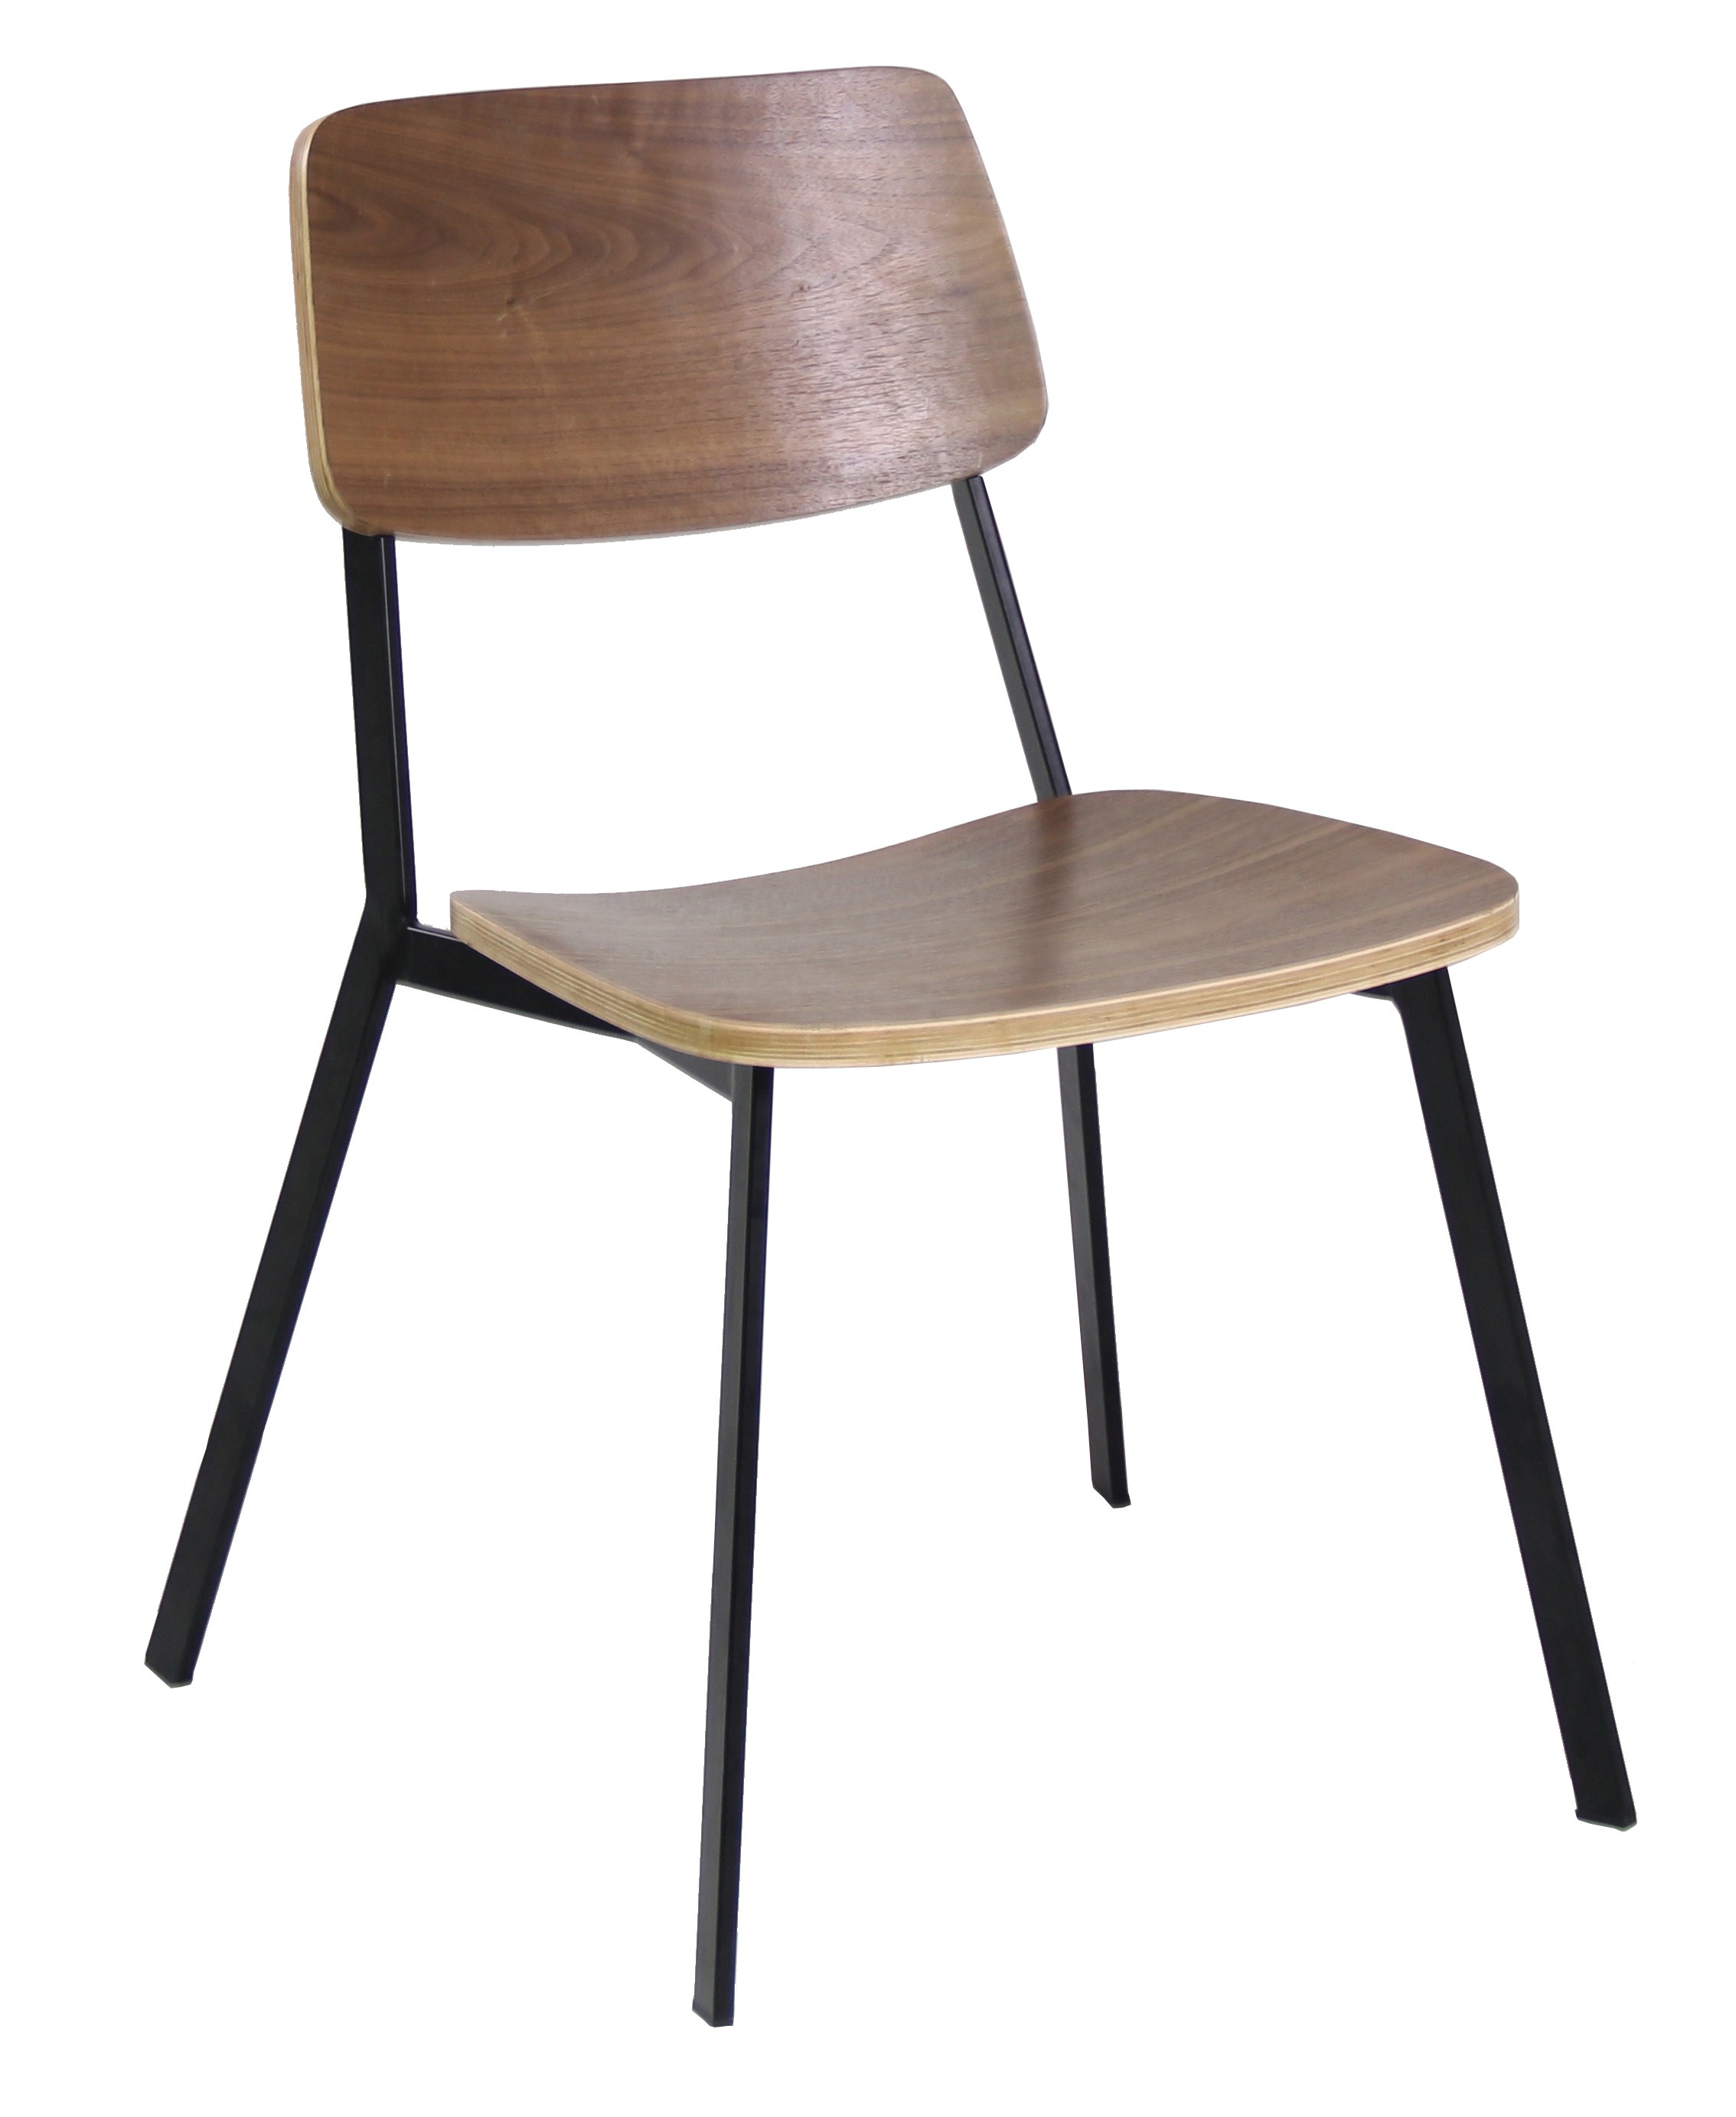 стулья из фанеры на металлокаркасе